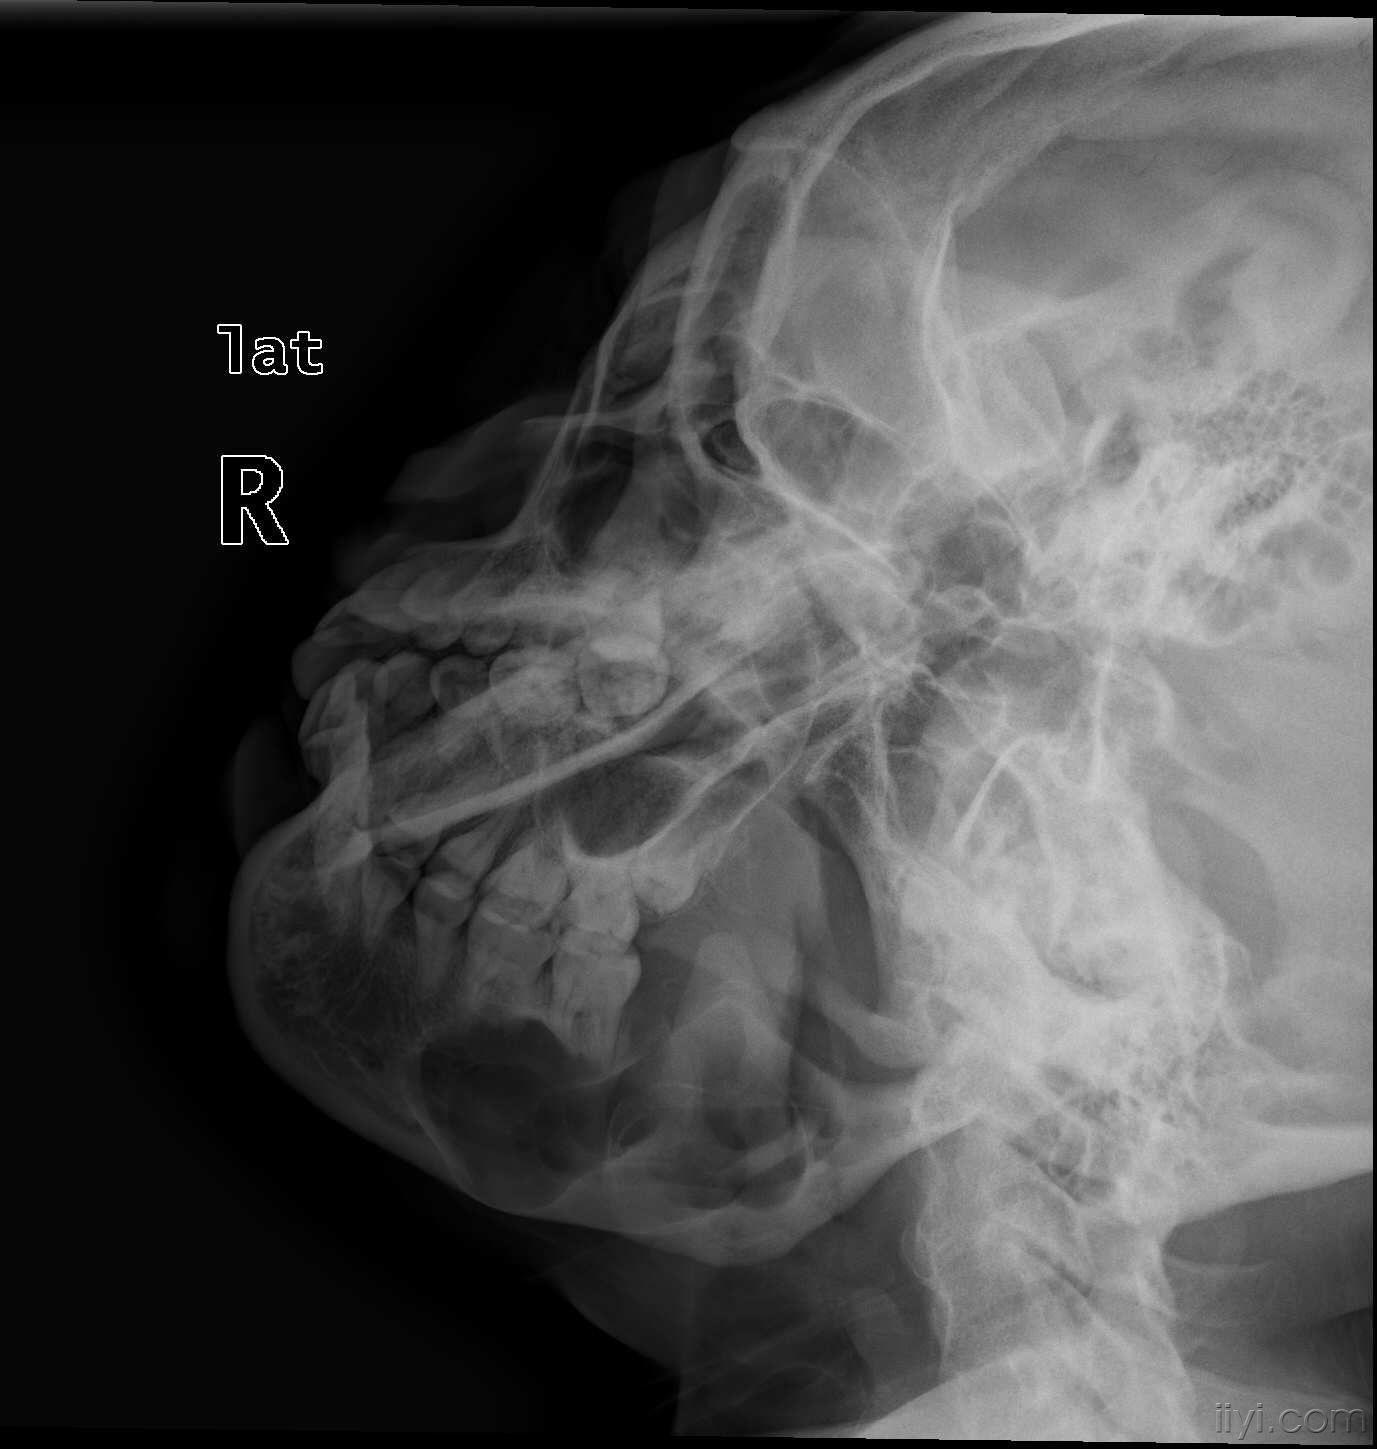 我在放射科学习期间收藏的典型骨骼疾病的dr片,图片超级多,超清晰,很